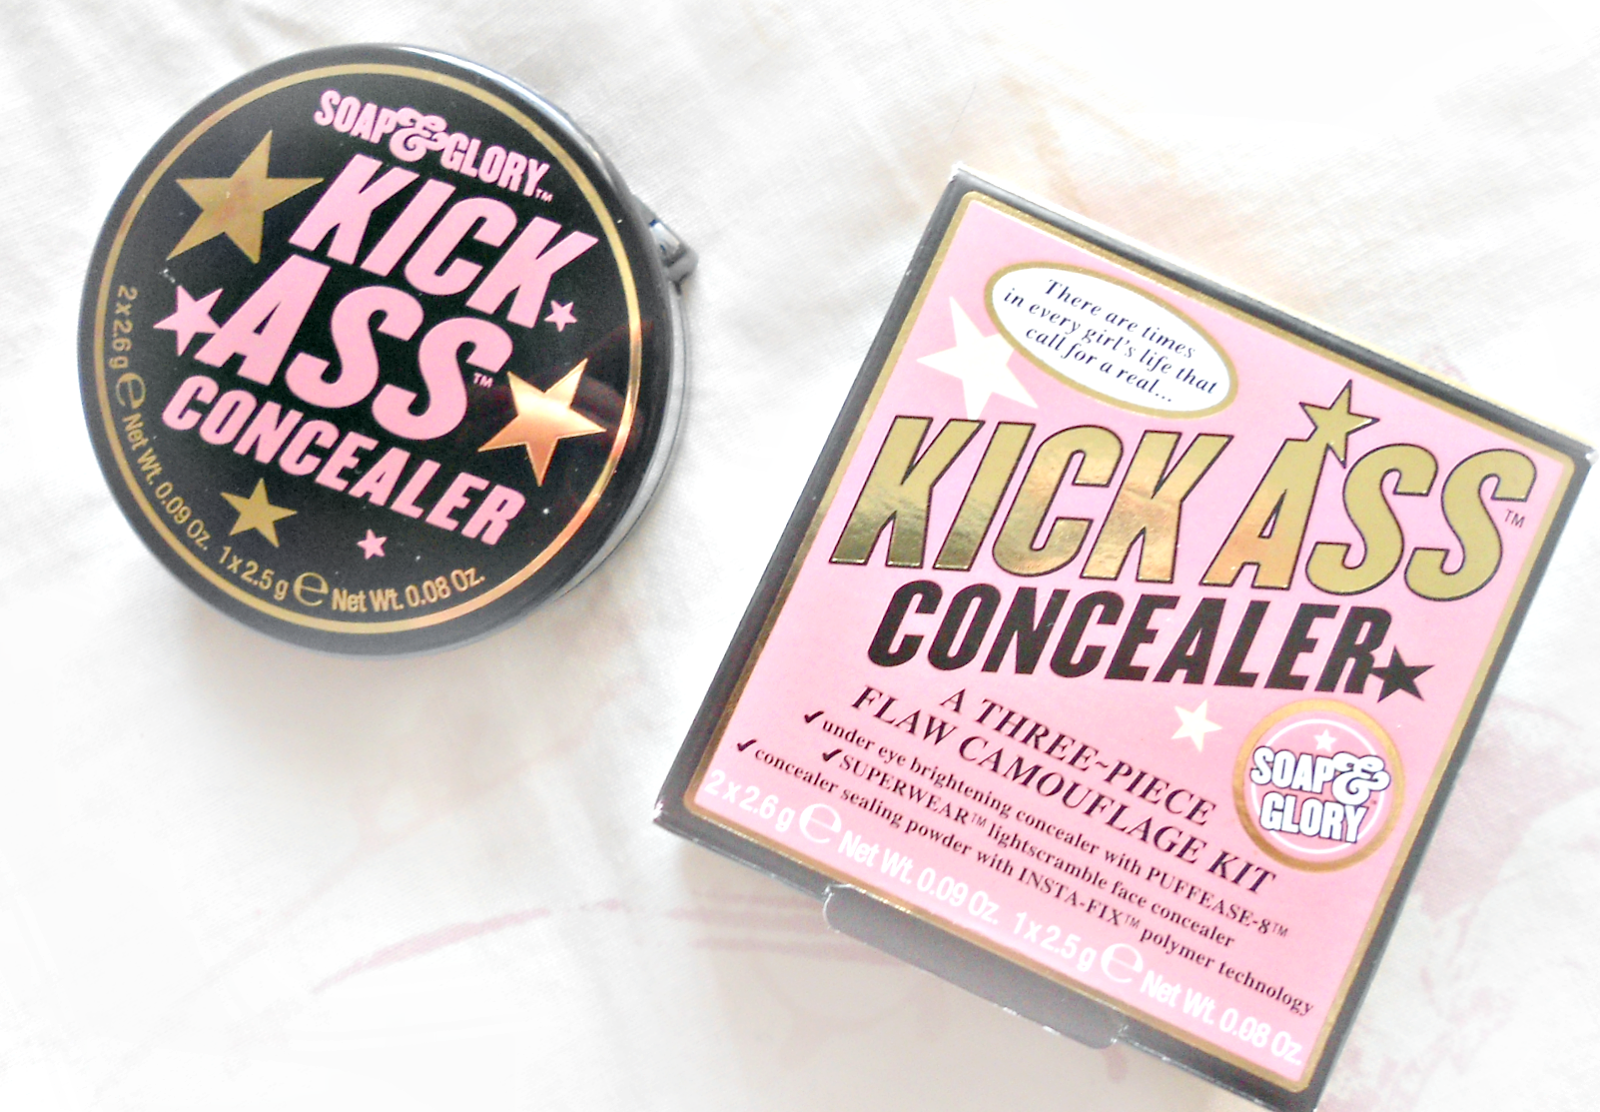 S&G Kick Ass Concealer | Does It Kick Ass?